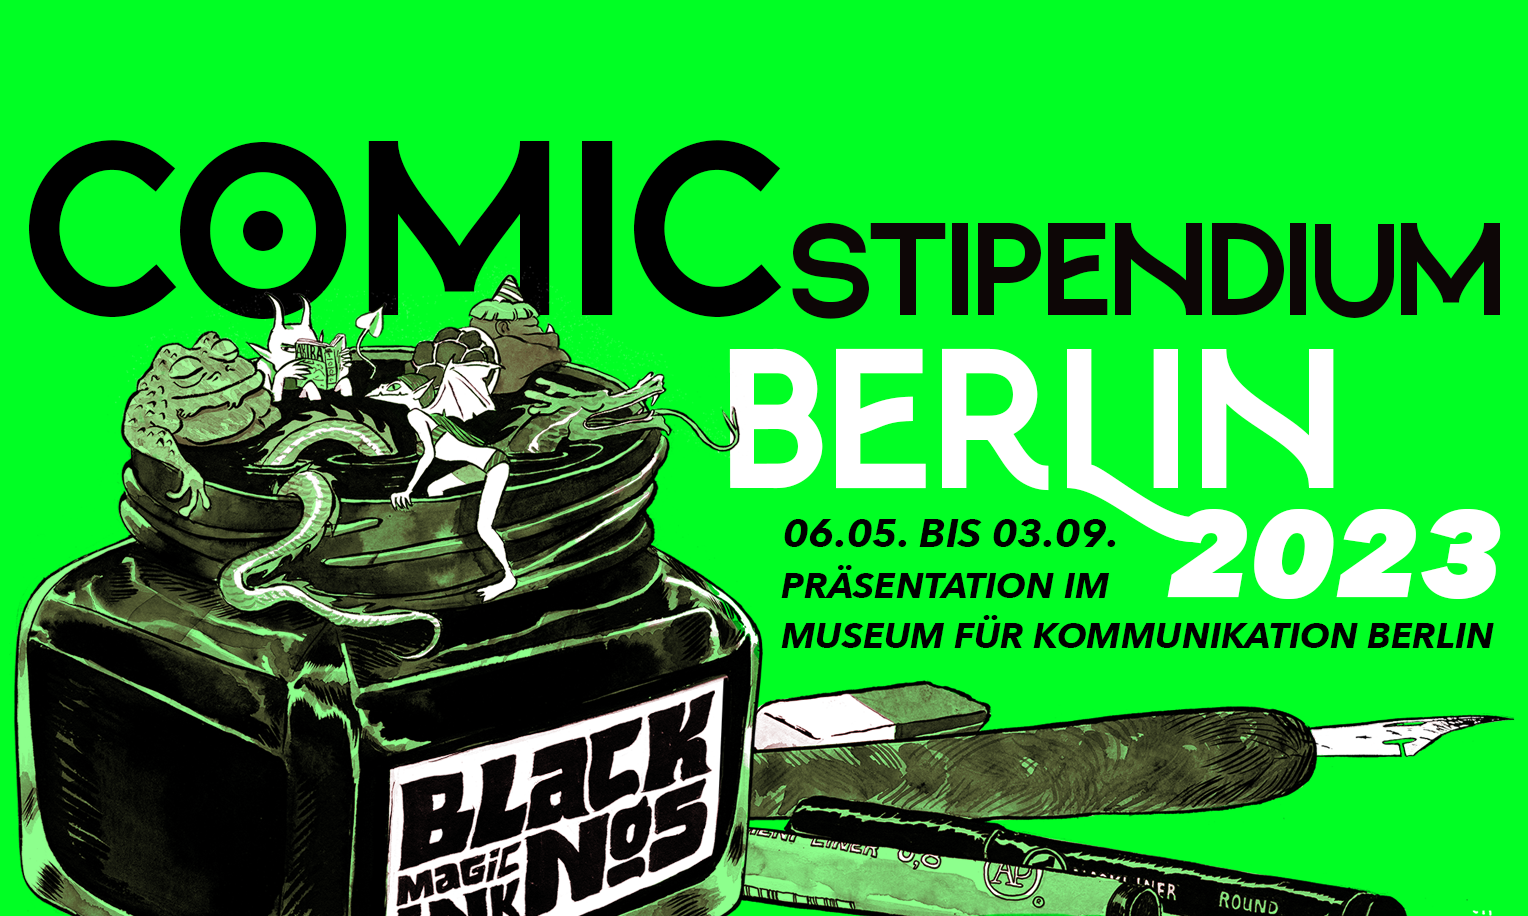 Banner für das Comic Stipendium Berlin 2023, Ausstellung im Museum für Kommunikation Berlin